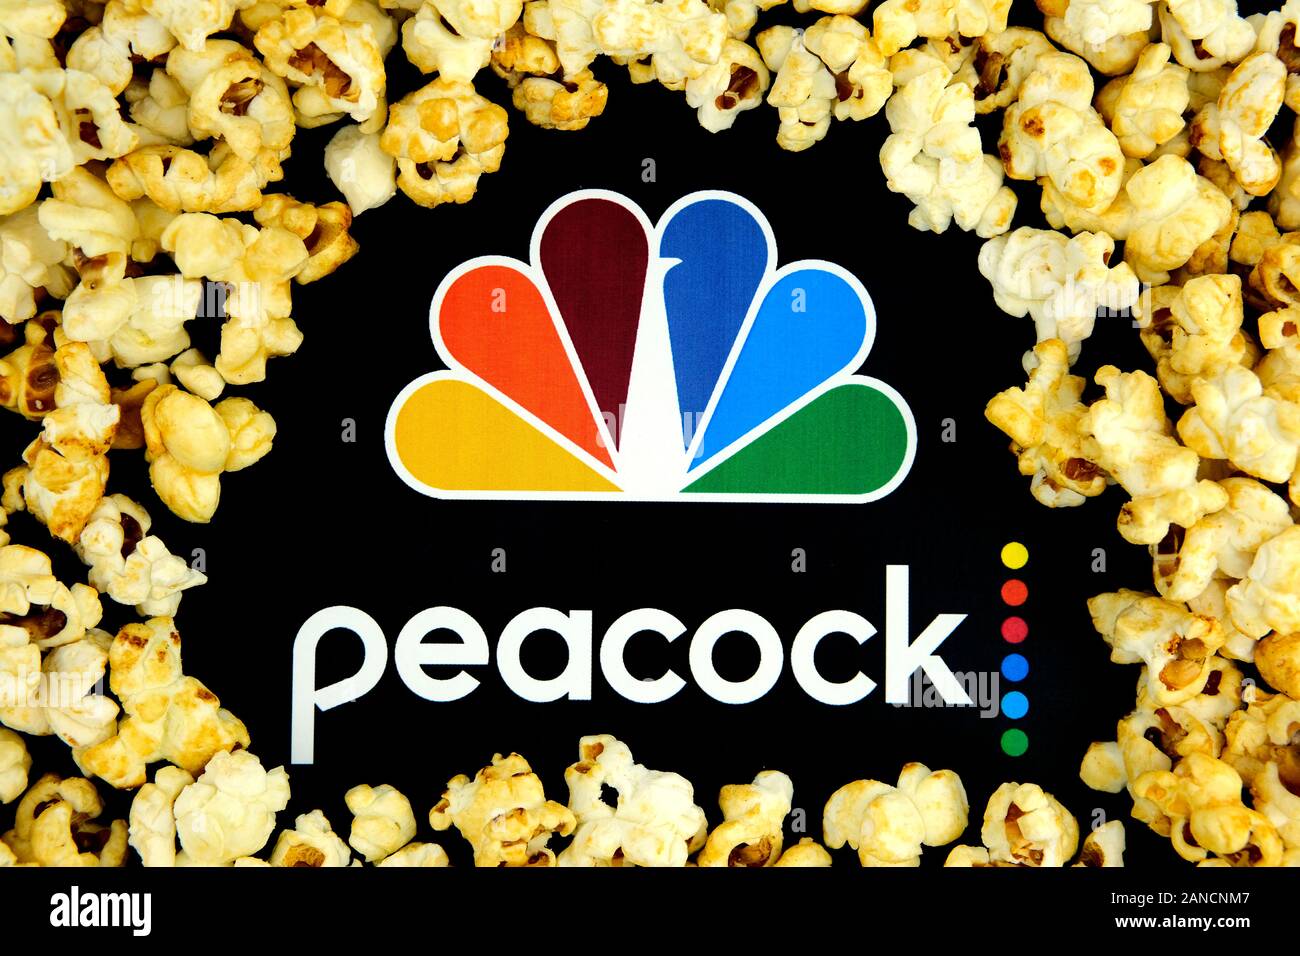 Peacock streaming Service Logo auf dem Papier Broschüre und Karamell Popcorn um ihn herum. Konzept für eine neue Streaming Video Service. Stockfoto